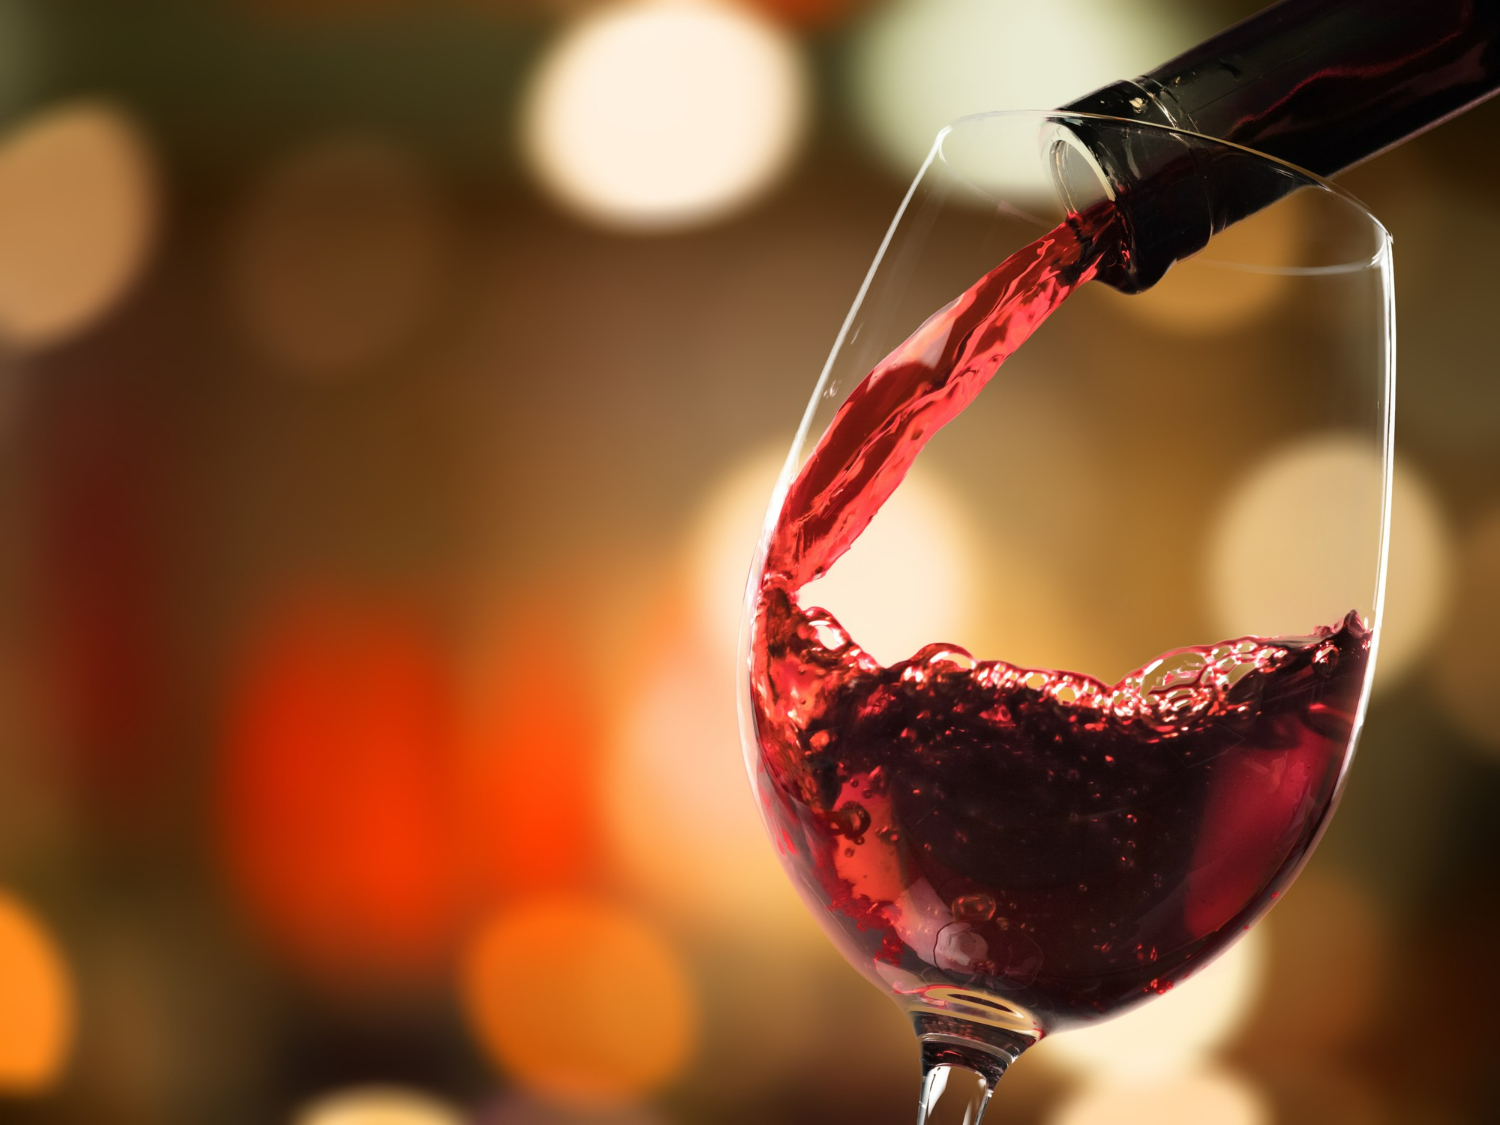 Mitos e verdades sobre o vinho